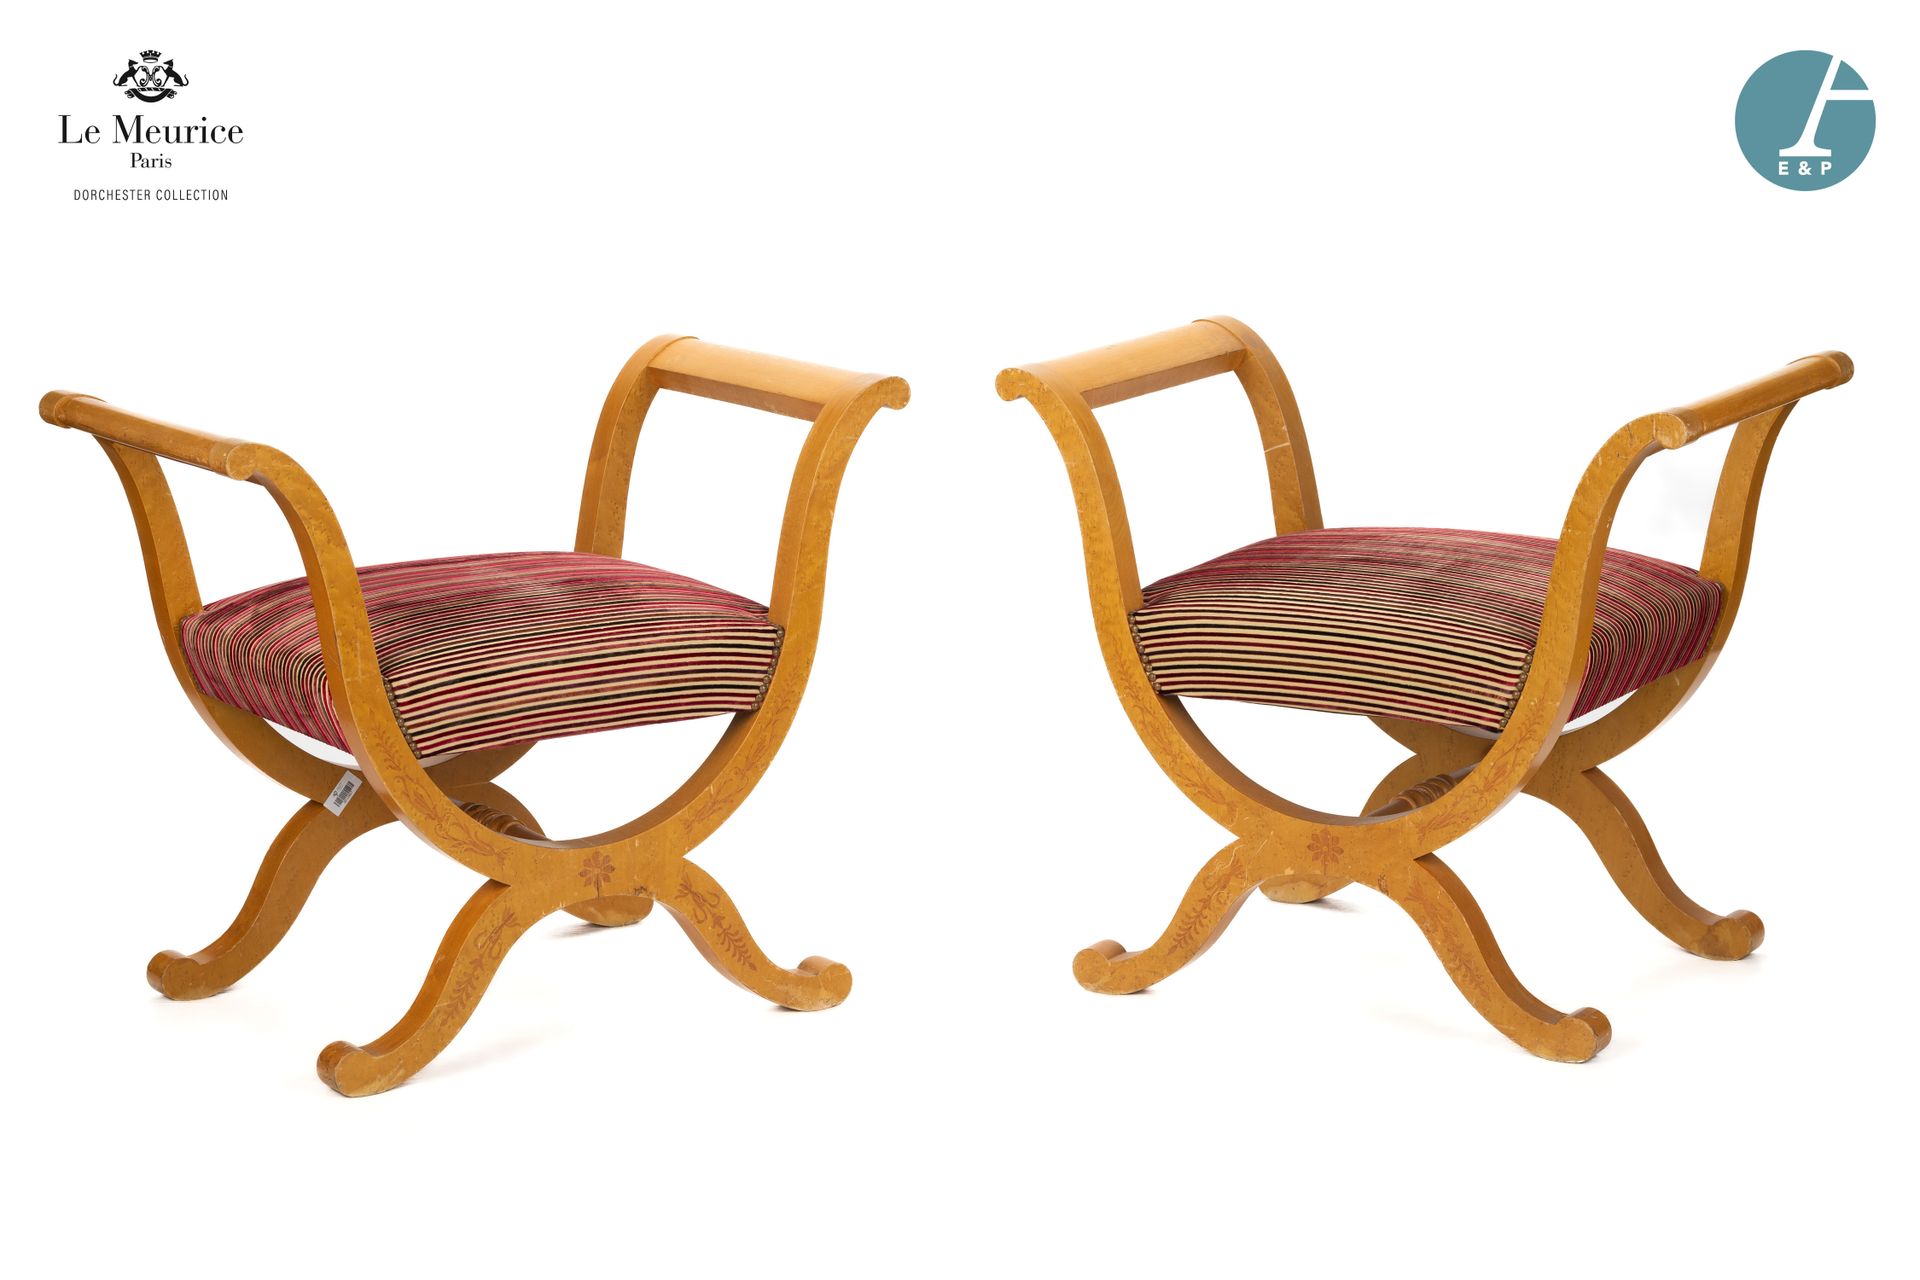 Null From Hôtel Le Meurice.
Pair of curule chairs in wood and blond wood veneer,&hellip;